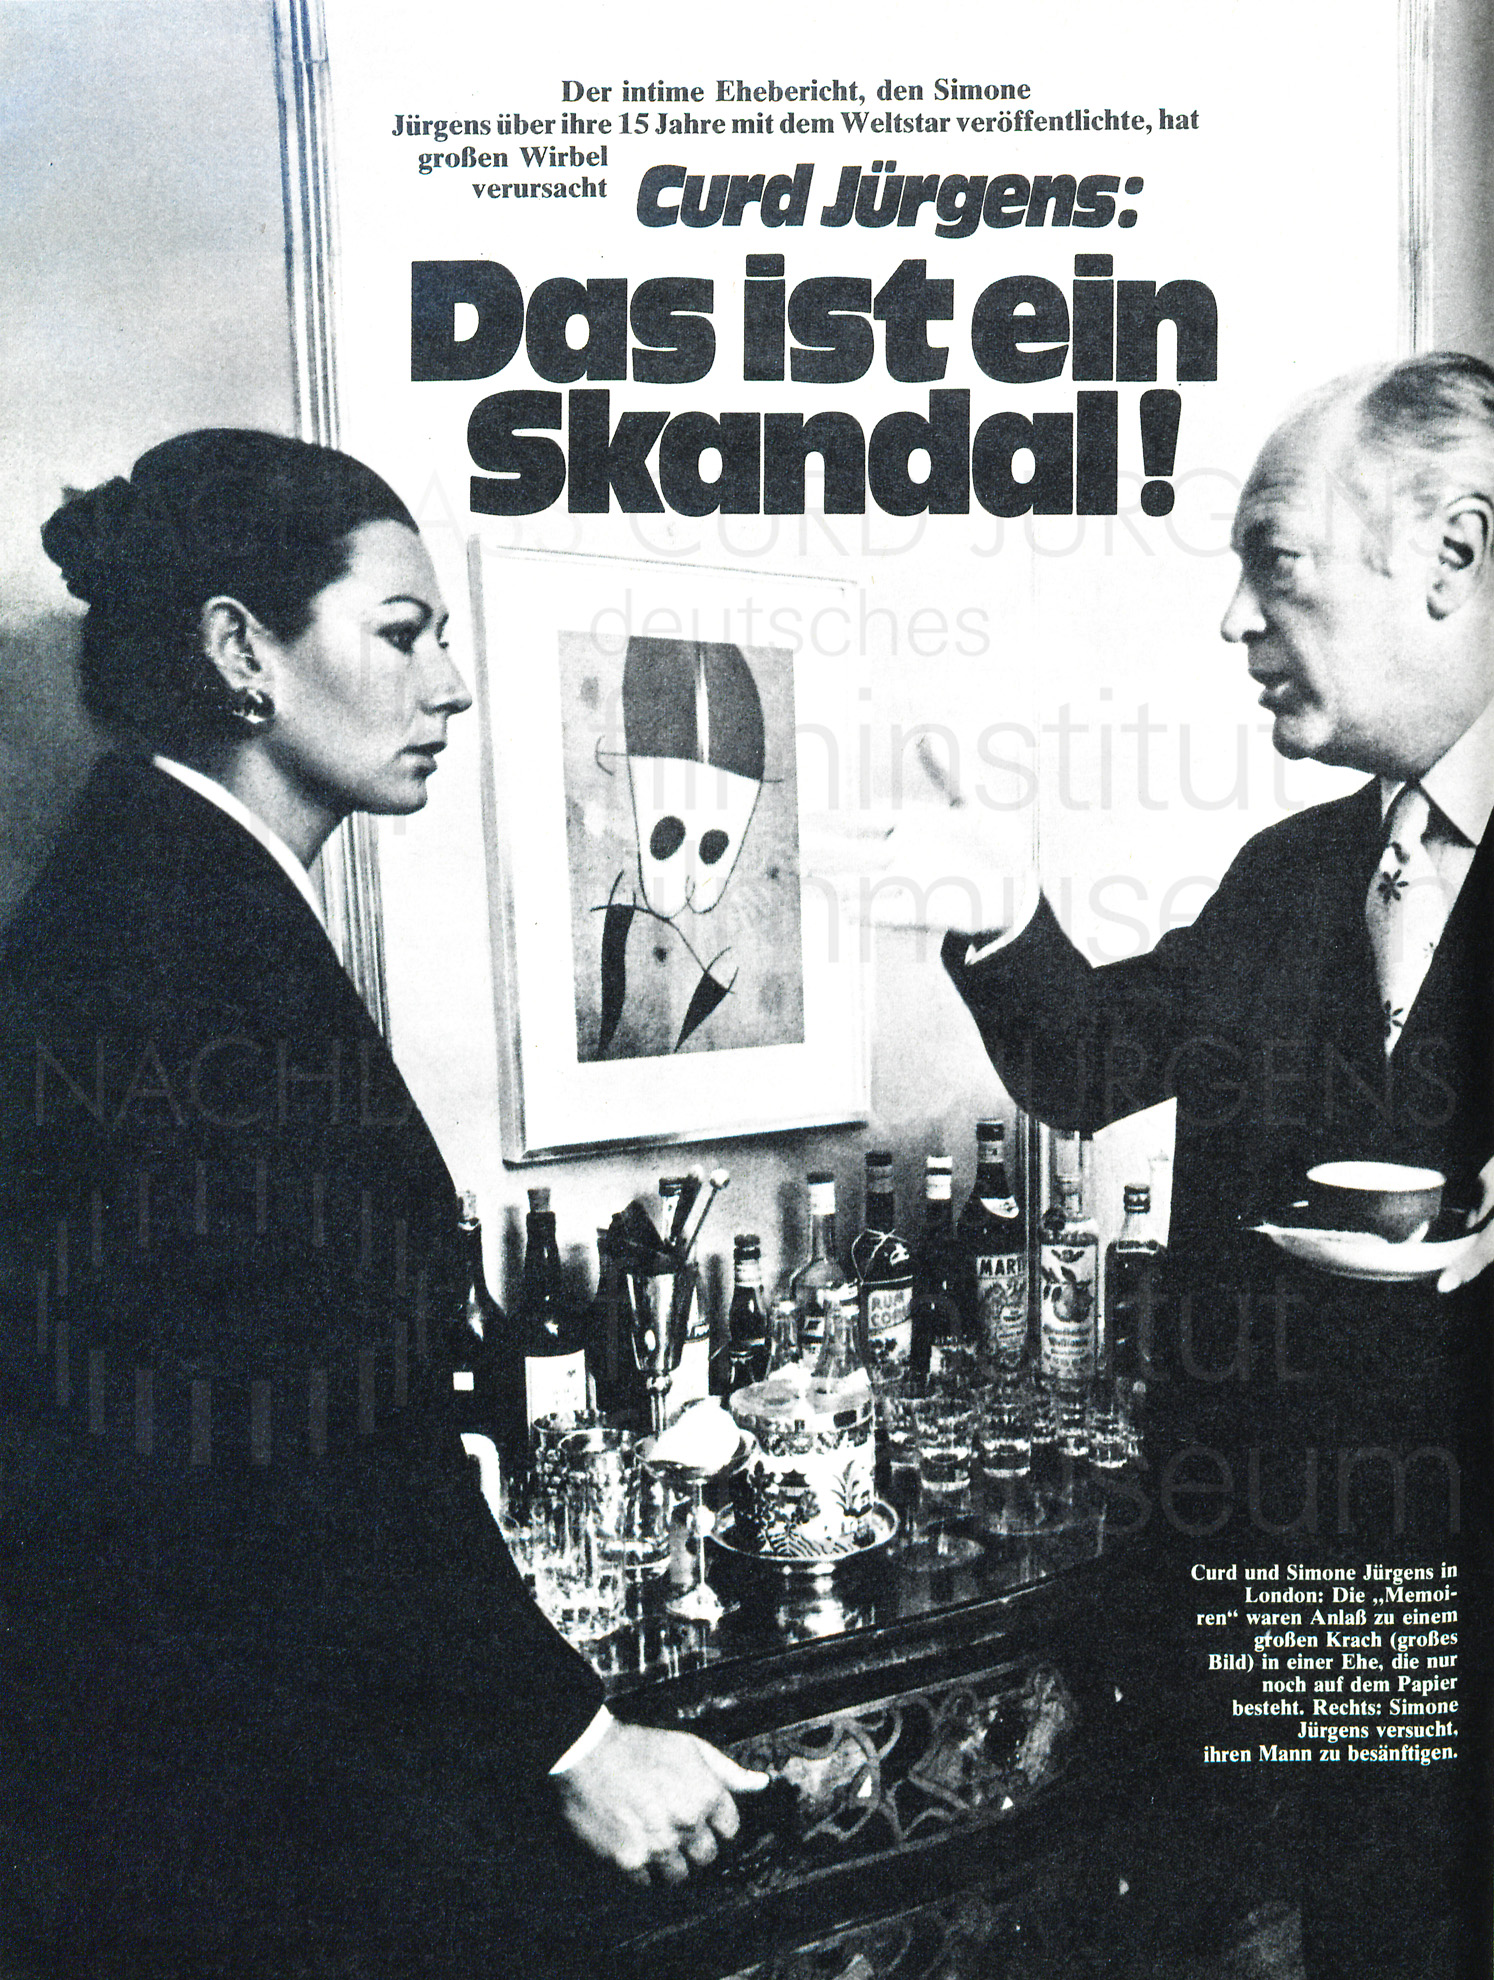 BUNTE: "Curd Jürgens: Das ist ein Skandal!", 24.1.1974